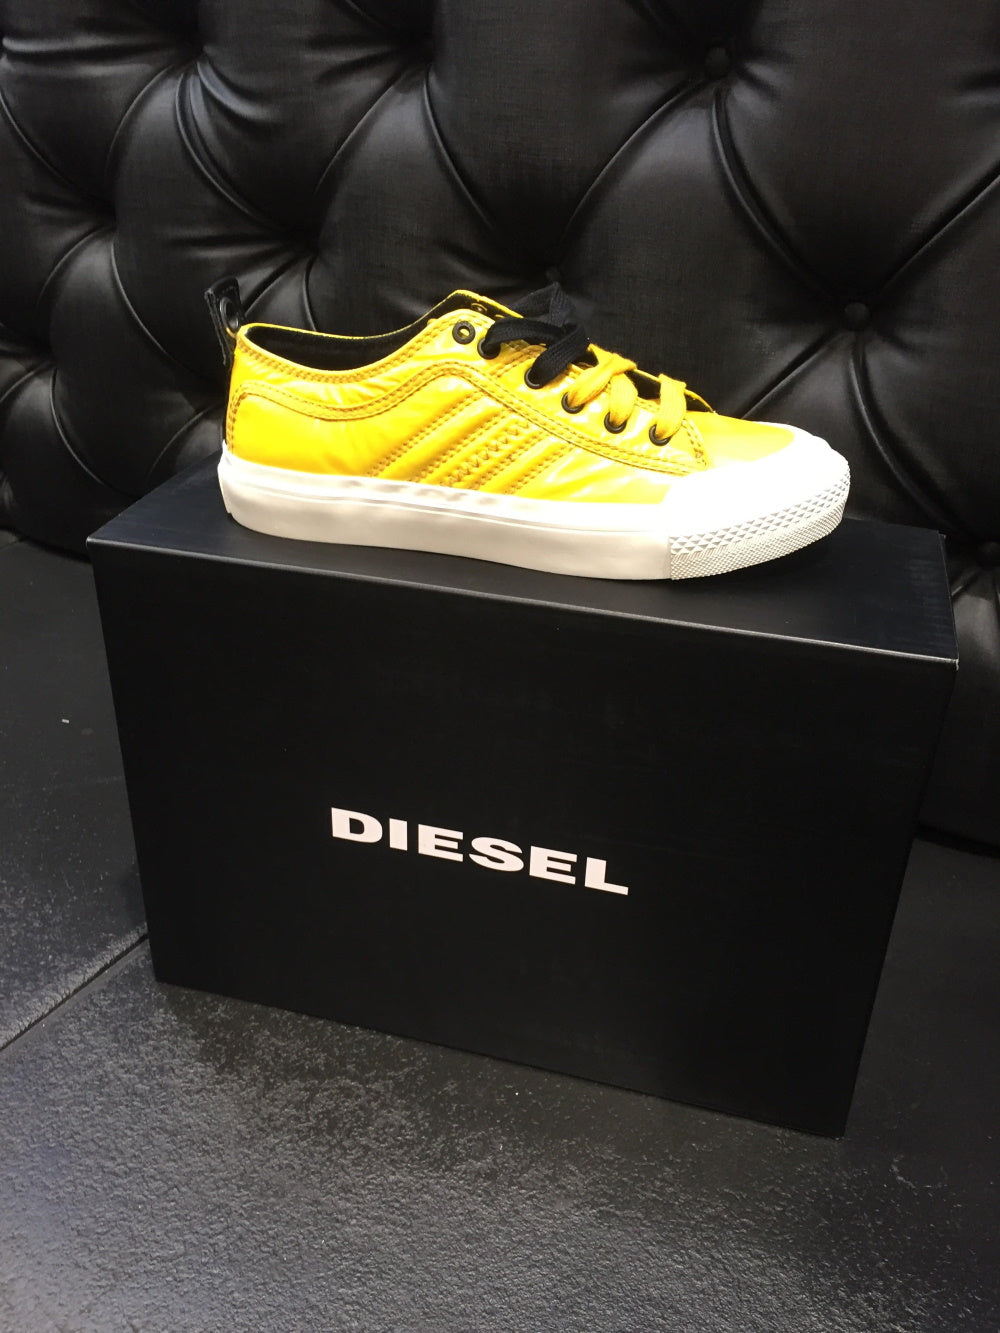 Diesel Nixon Maxi Shoe - Lemon Yellow